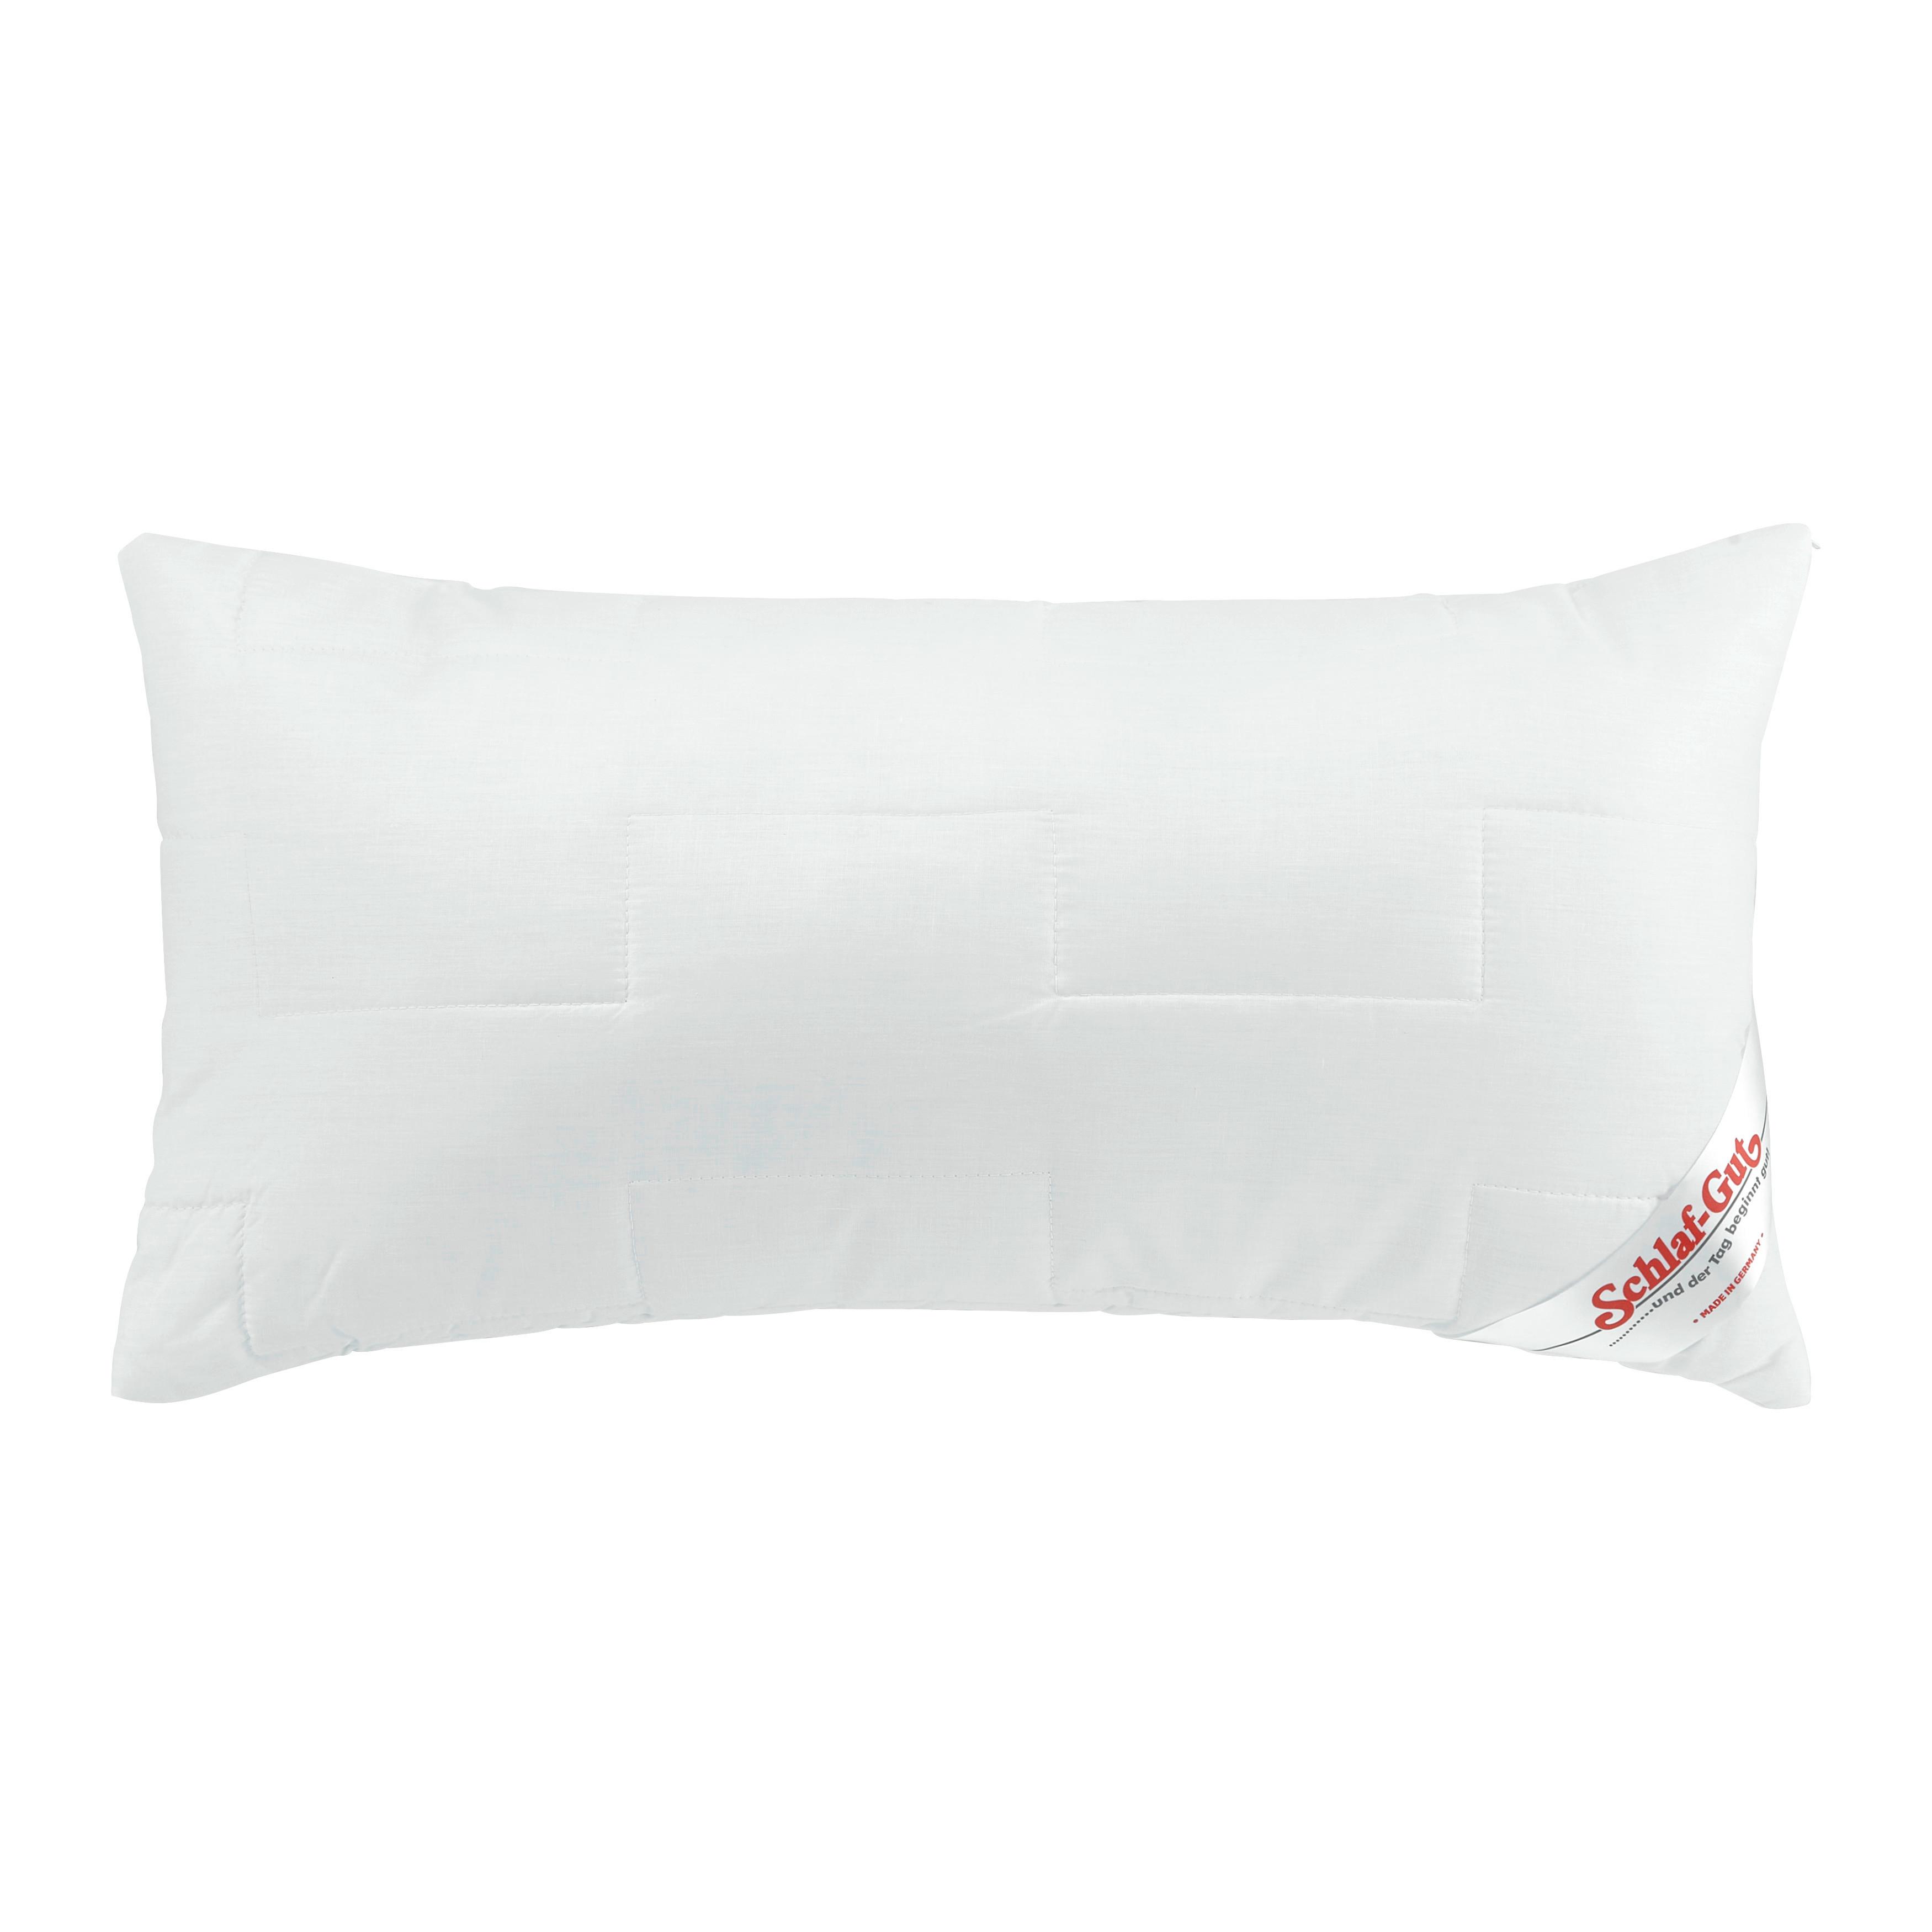 Kopfpolster Schlaf Gut Utah, ca. 40x80cm - Weiß, KONVENTIONELL, Textil (80/40cm) - FAN